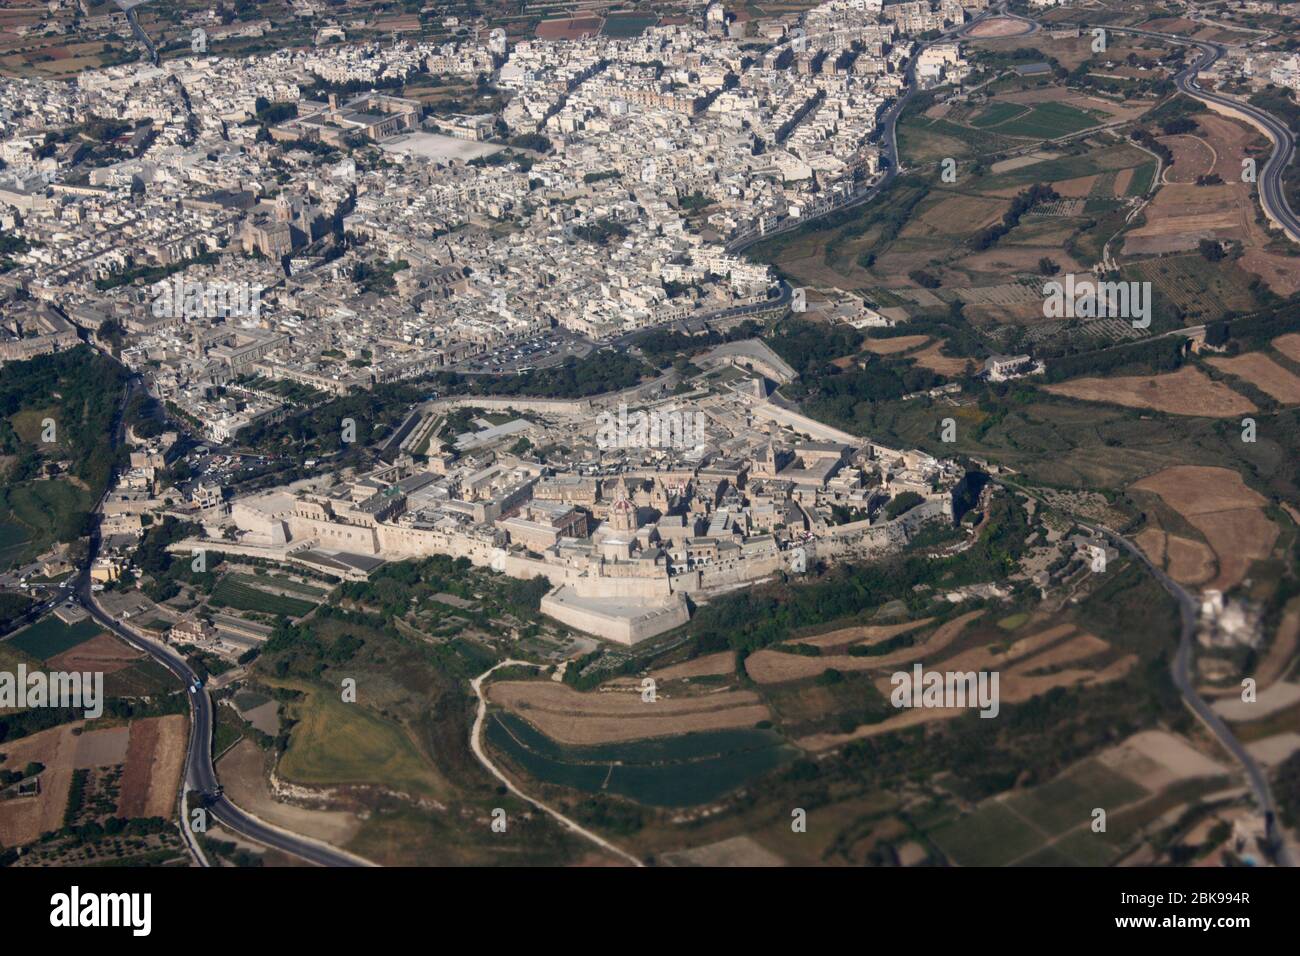 Die historische ummauerte Stadt Mdina und die Nachbarstadt Rabat in Malta, aus der Luft gesehen. Reisen Sie in Europa. Luftaufnahme. Stockfoto